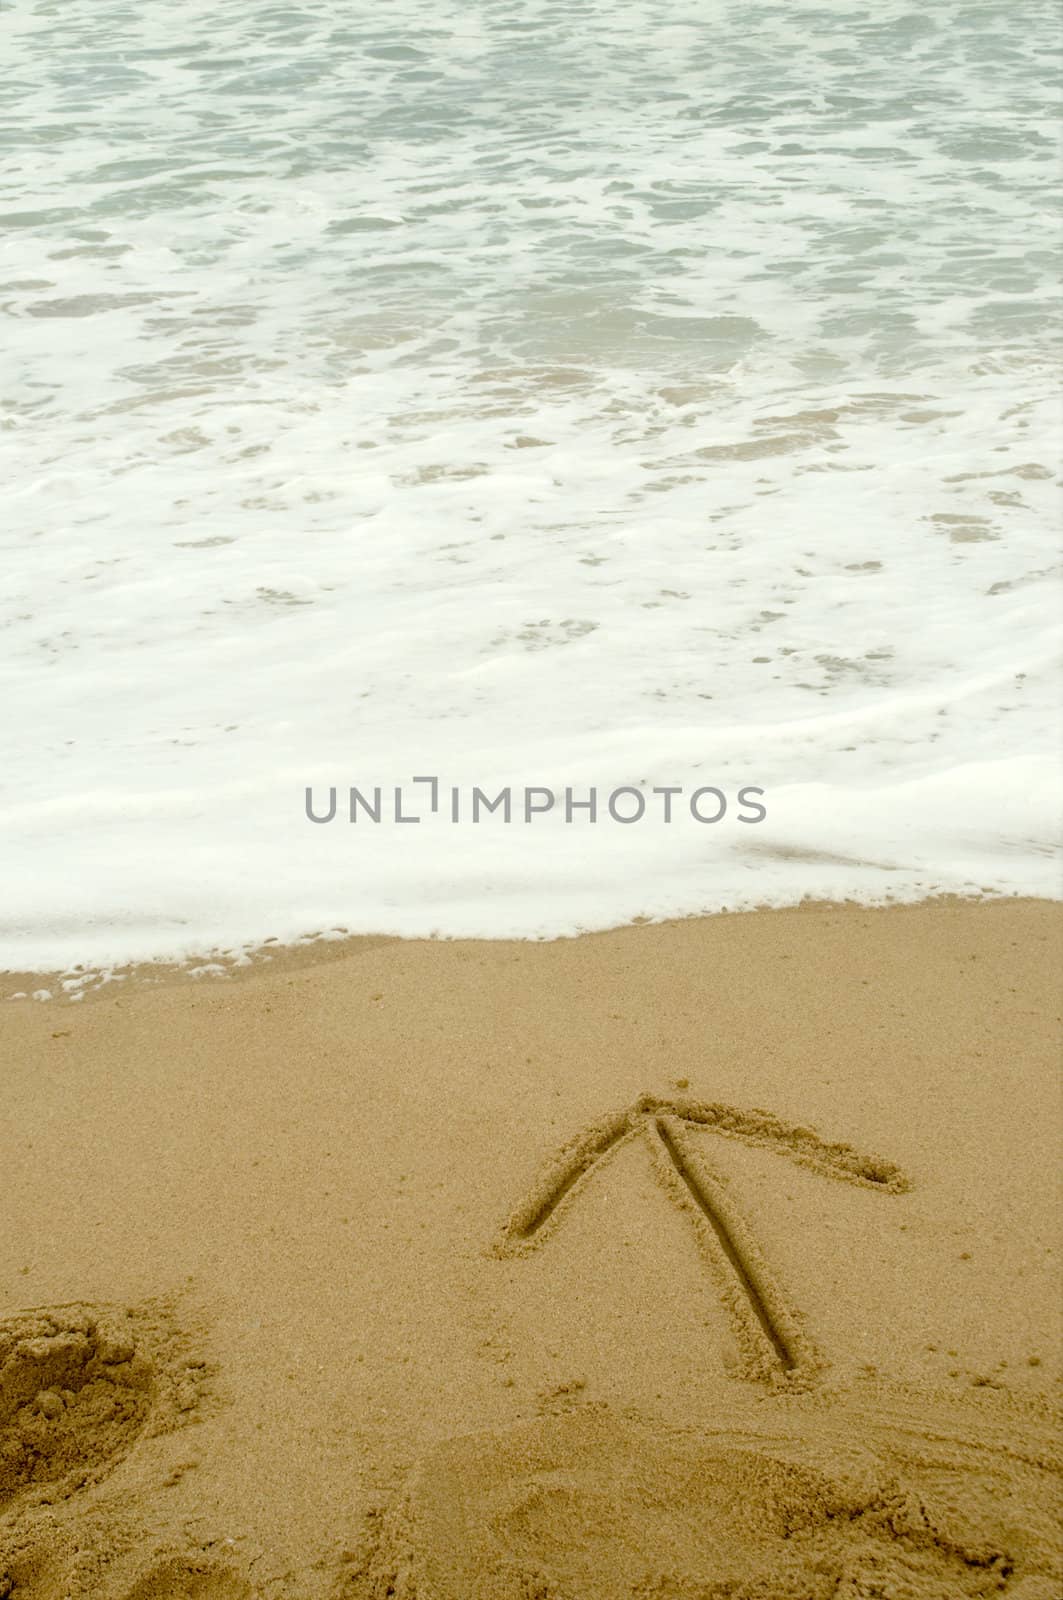 Arrow writen in the sand